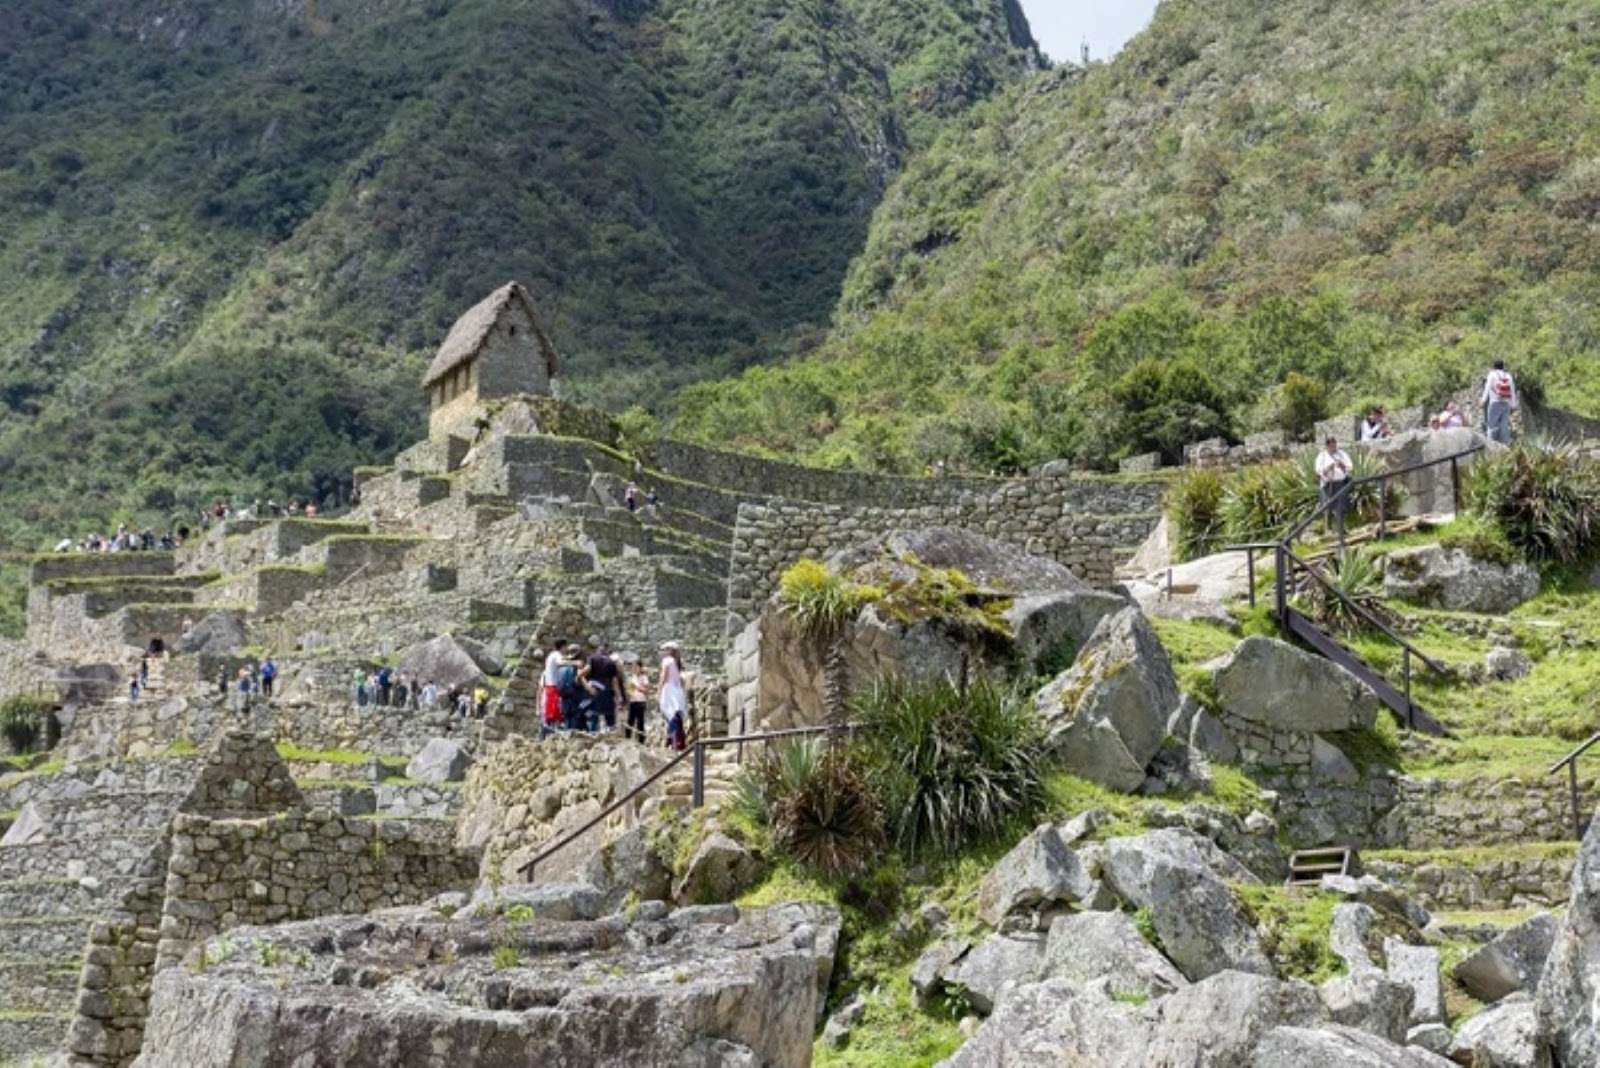 Machu Picchu: medidas para cumplir horarios de visita busca establecer manejo responsable